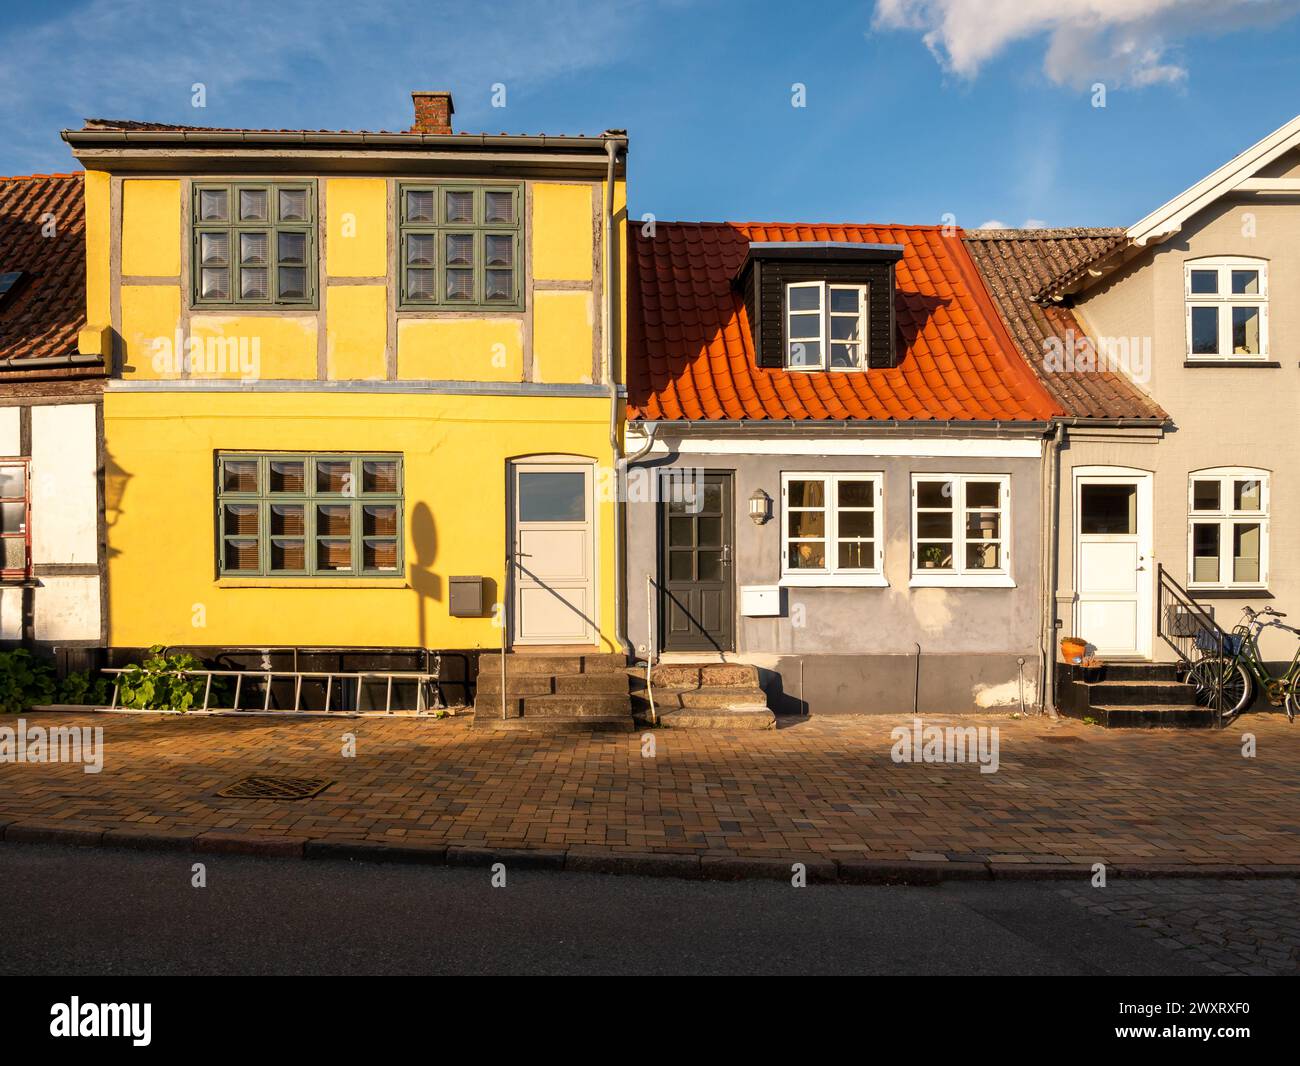 Charming historic houses along Adelgade in old town of Bogense, Funen, Denmark Stock Photo